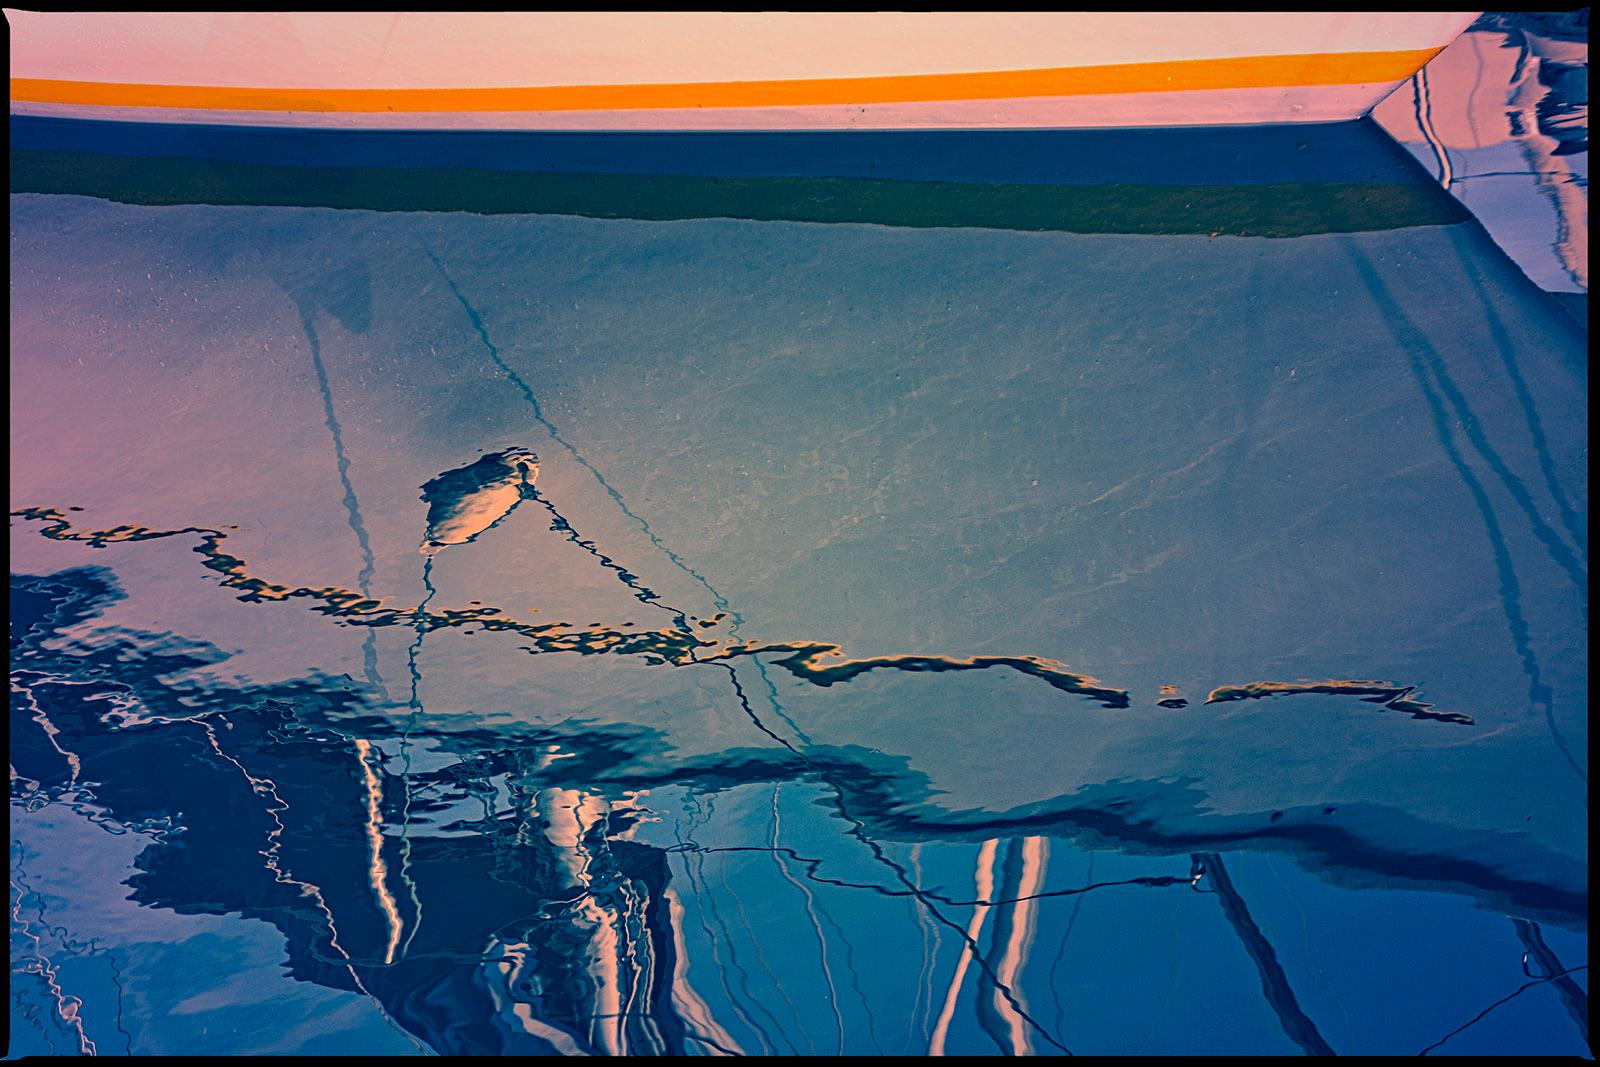 Boat 4- Signierter abstrakter Kunstdruck in limitierter Auflage, großformatig, zeitgenössisch, blau